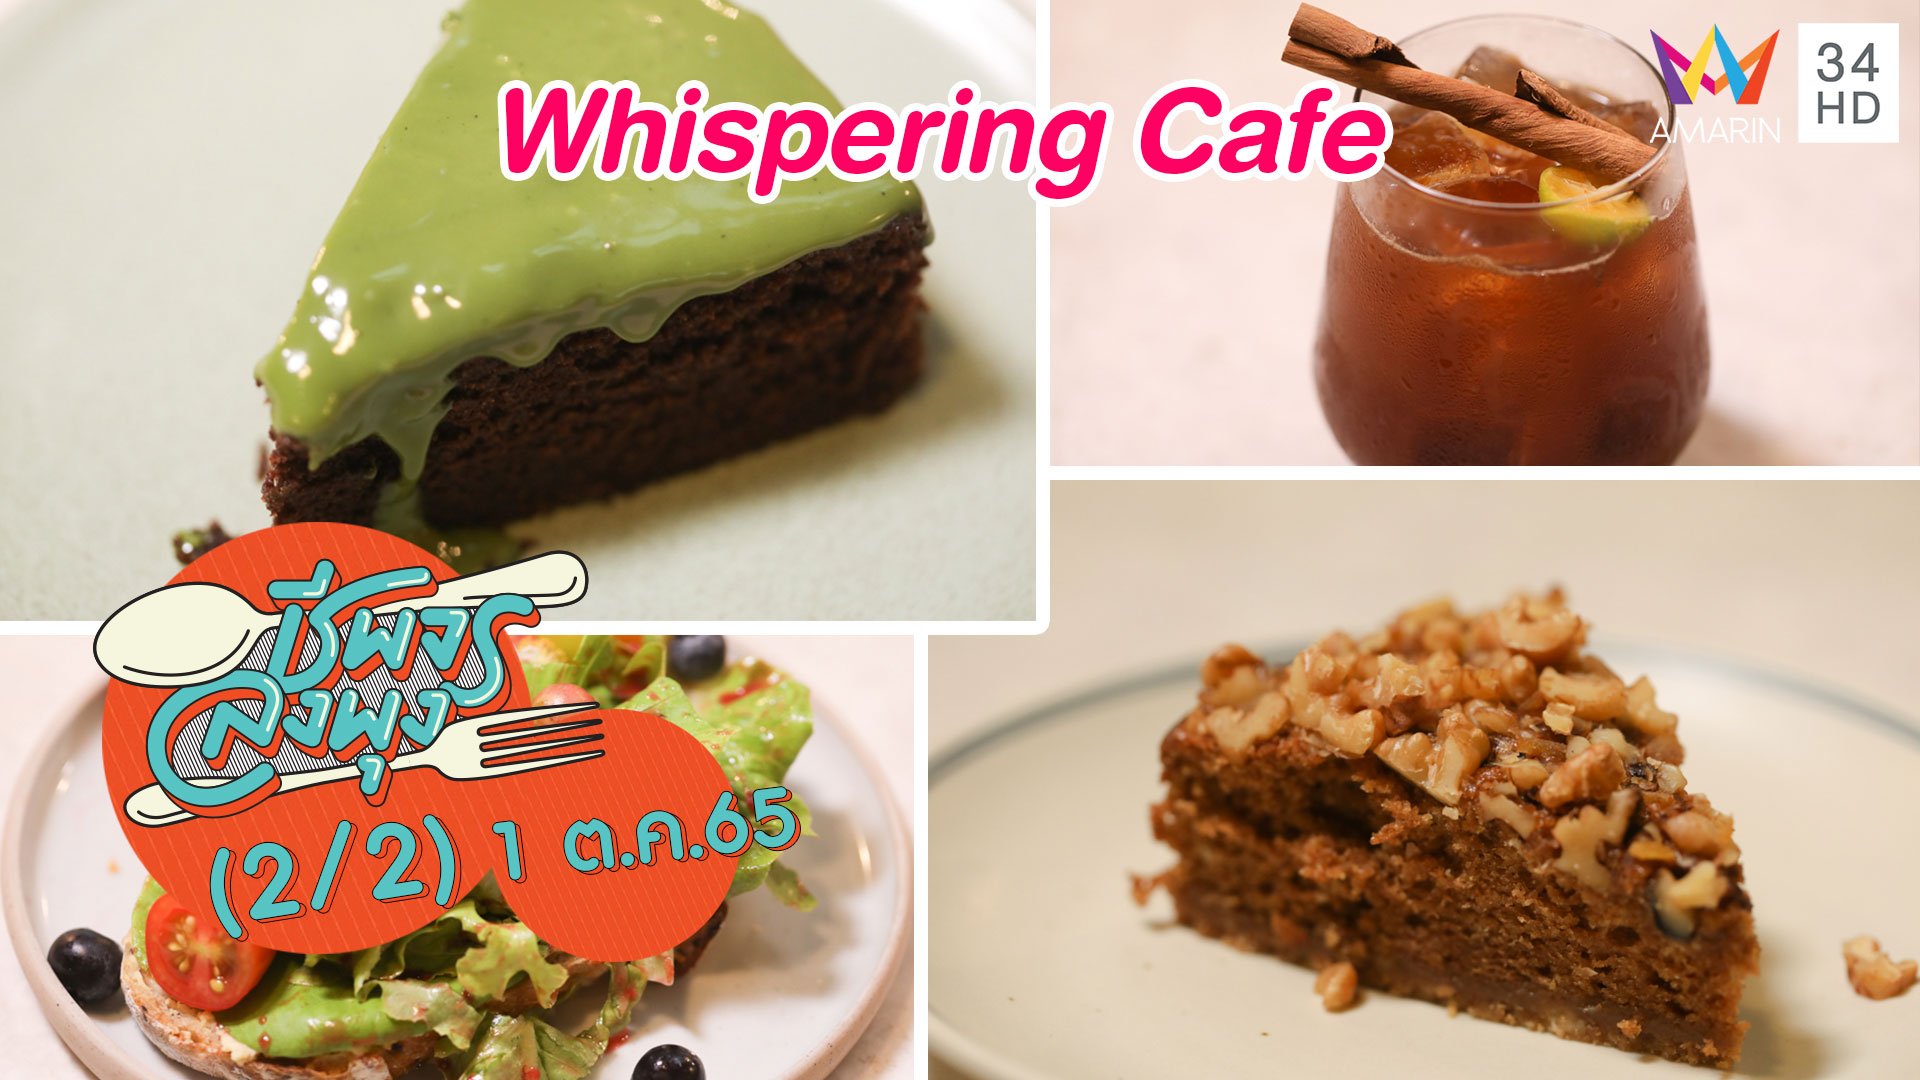 คาเฟ่มินิมอลวัตถุดิบออแกนิค @ร้าน Whispering Cafe | ชีพจรลงพุง | 1 ต.ค. 65 (2/2) | AMARIN TVHD34